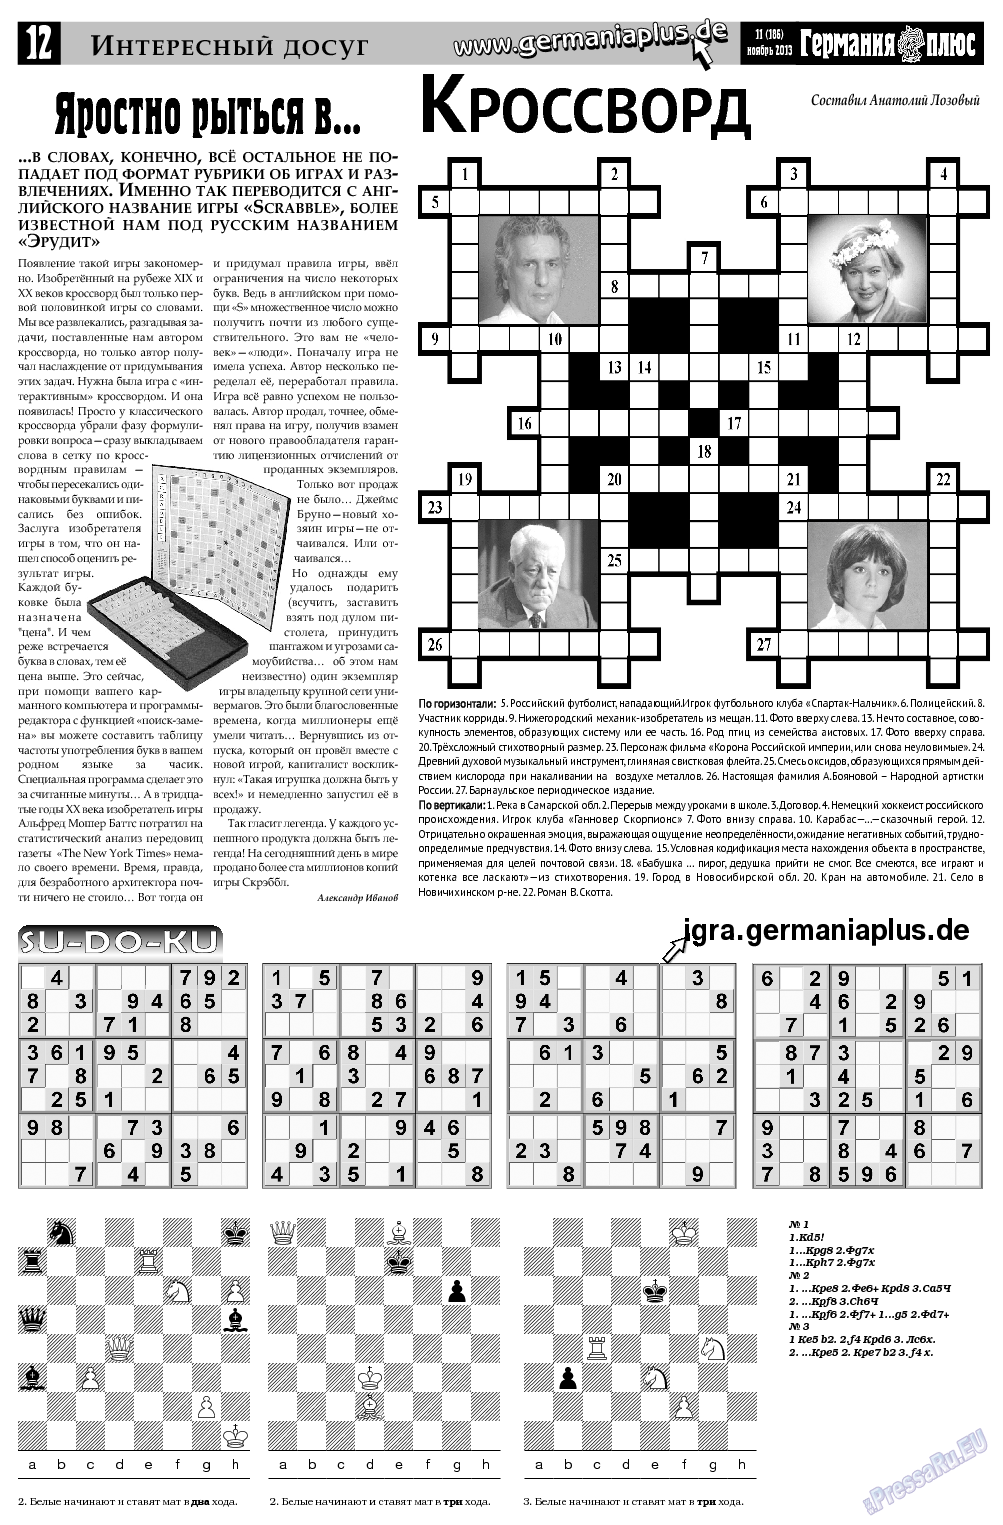 Германия плюс, газета. 2013 №11 стр.12